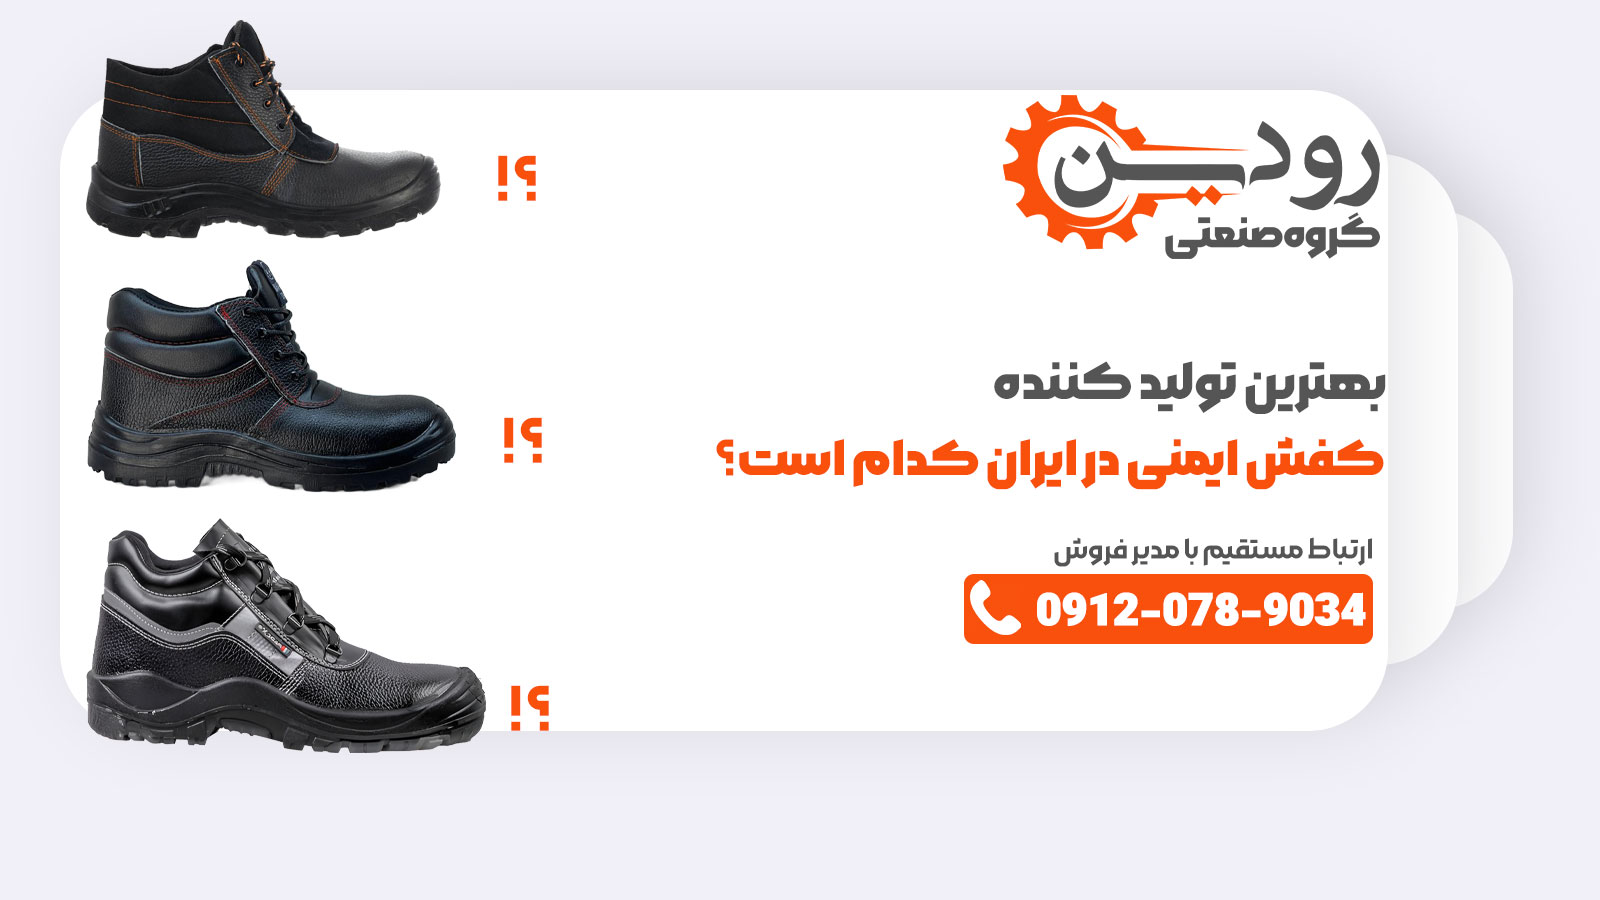 برای پیدا کردن بهترین شرکت و کارخانه تولید کفش ایمنی در کشور ایران، اگر در اینترنت سرچ کنید به نتایج بهتری خواهید رسید.